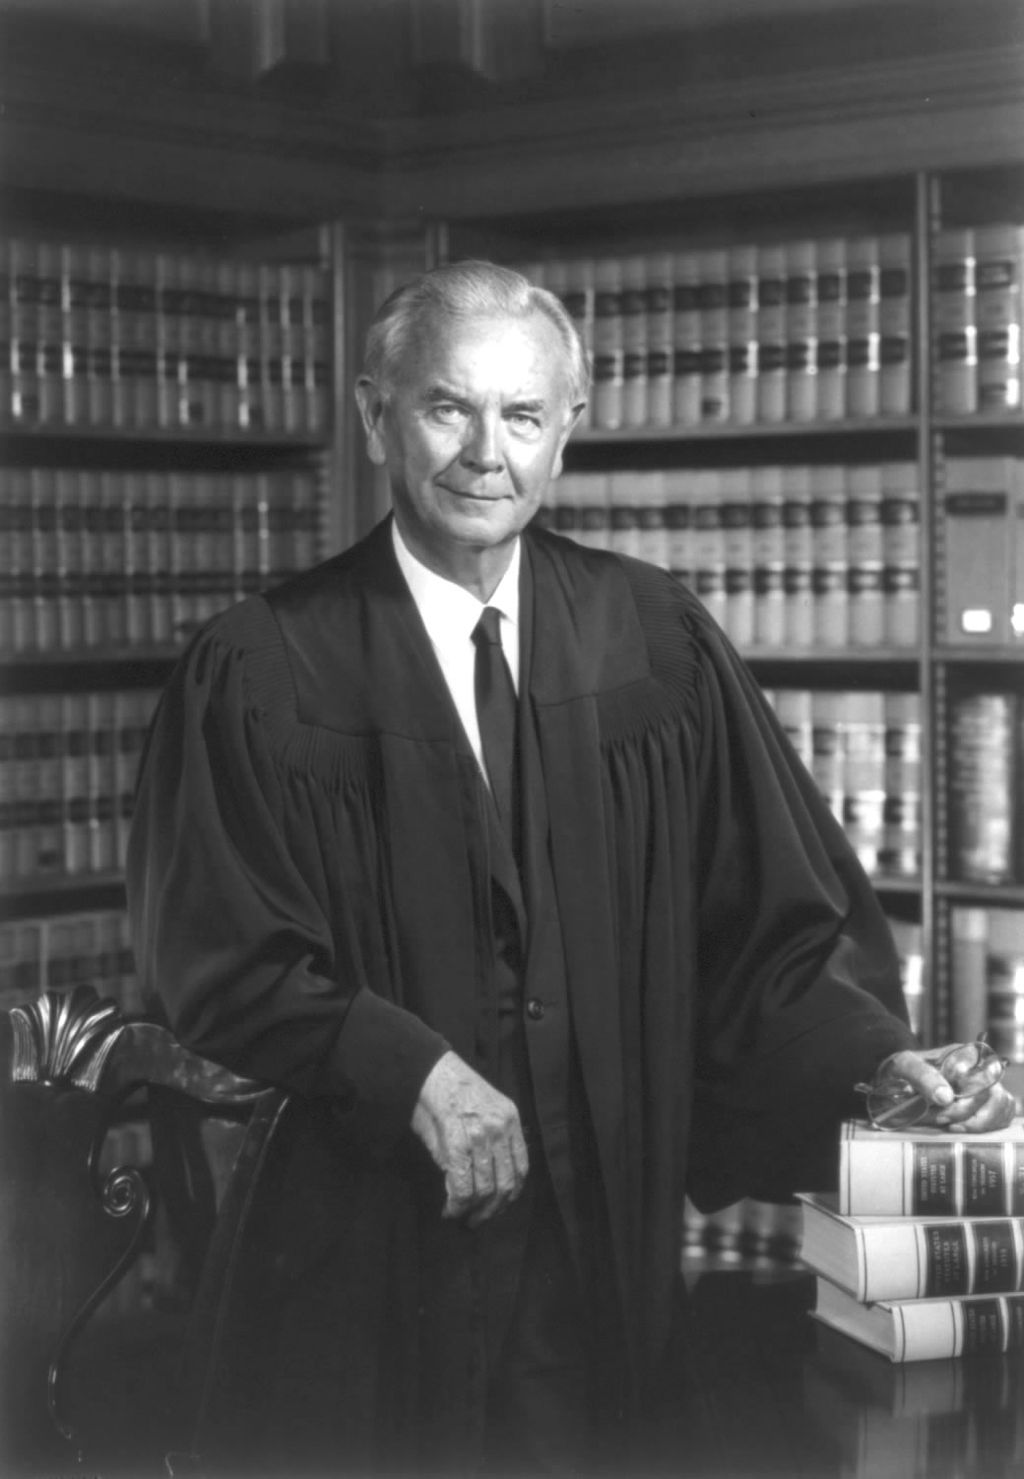 Portrait of Supreme Court Justice William Brennan